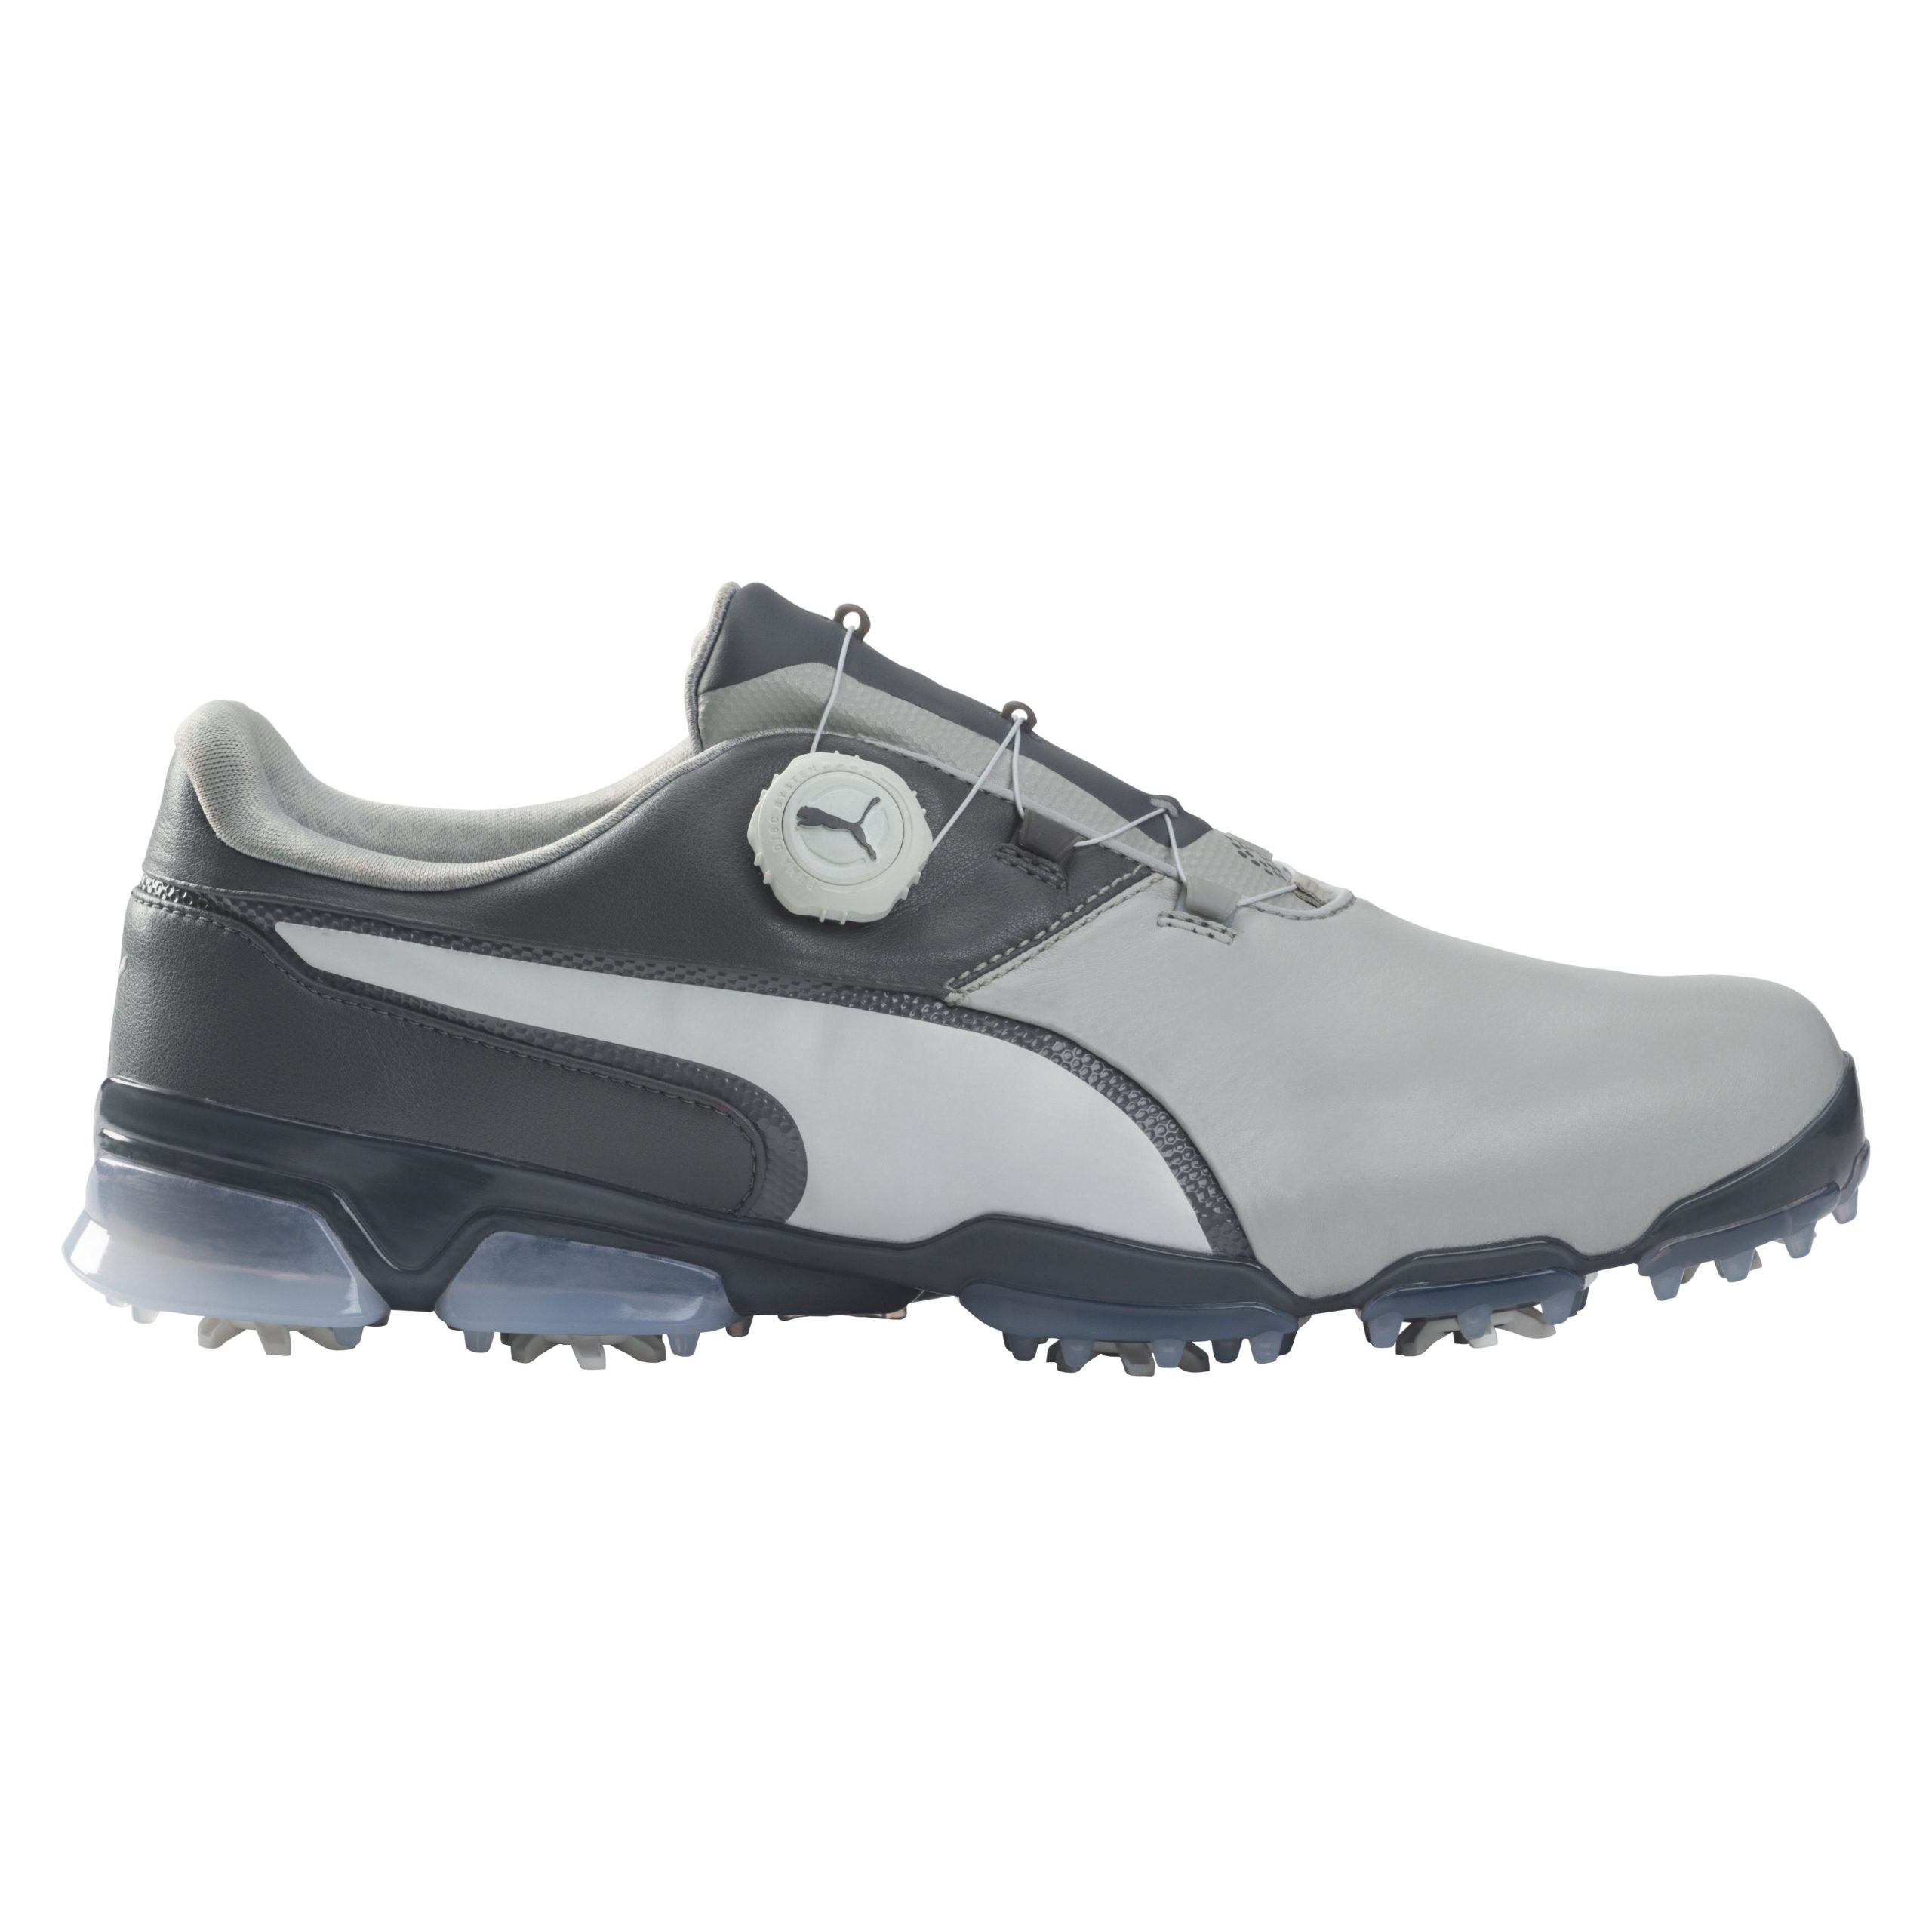 puma titantour ignite premium disc golf shoes review